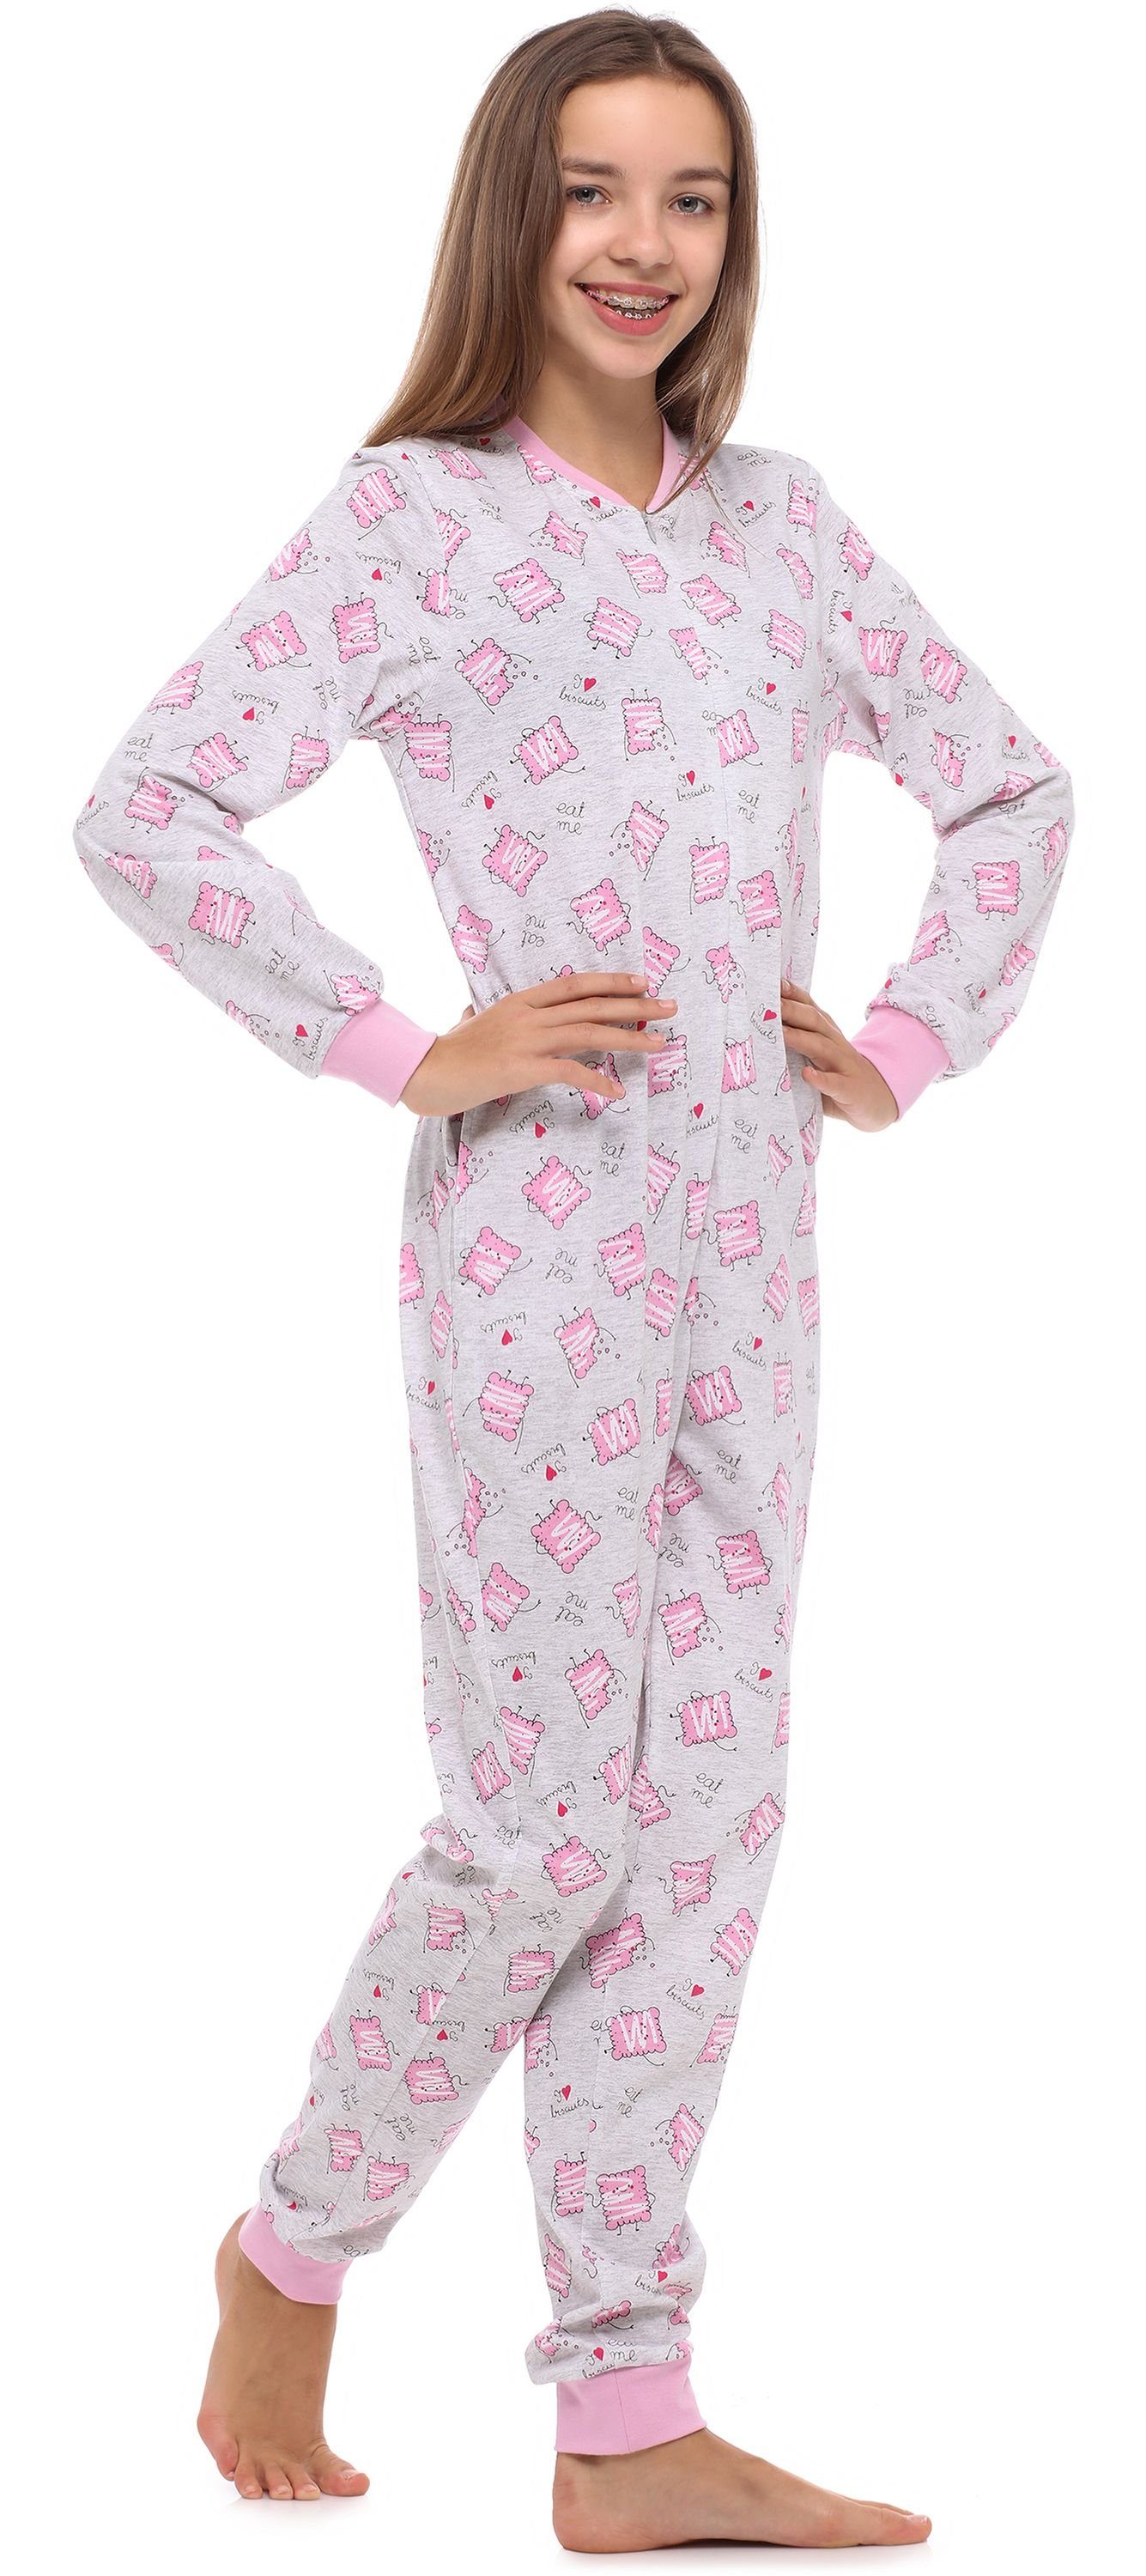 MS10-235 Merry Style Schlafanzug Schlafanzug Jugend Mädchen Melange/Kekse Schlafoverall